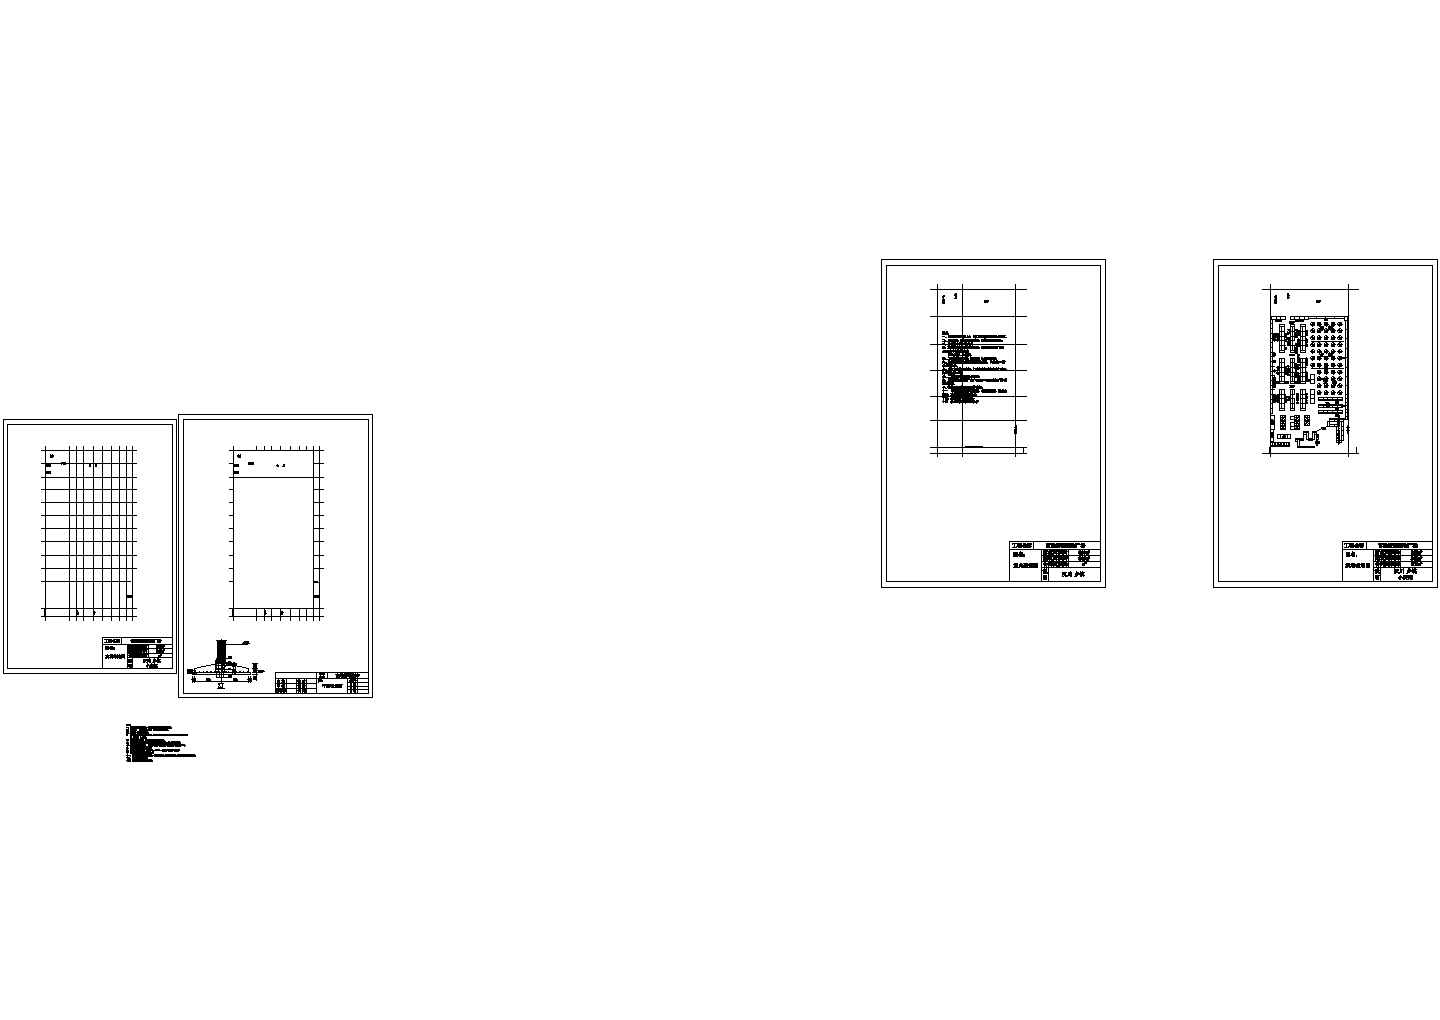 某小型现代超市（营业面积669㎡）室内装修设计cad平面施工图（甲级院设计）